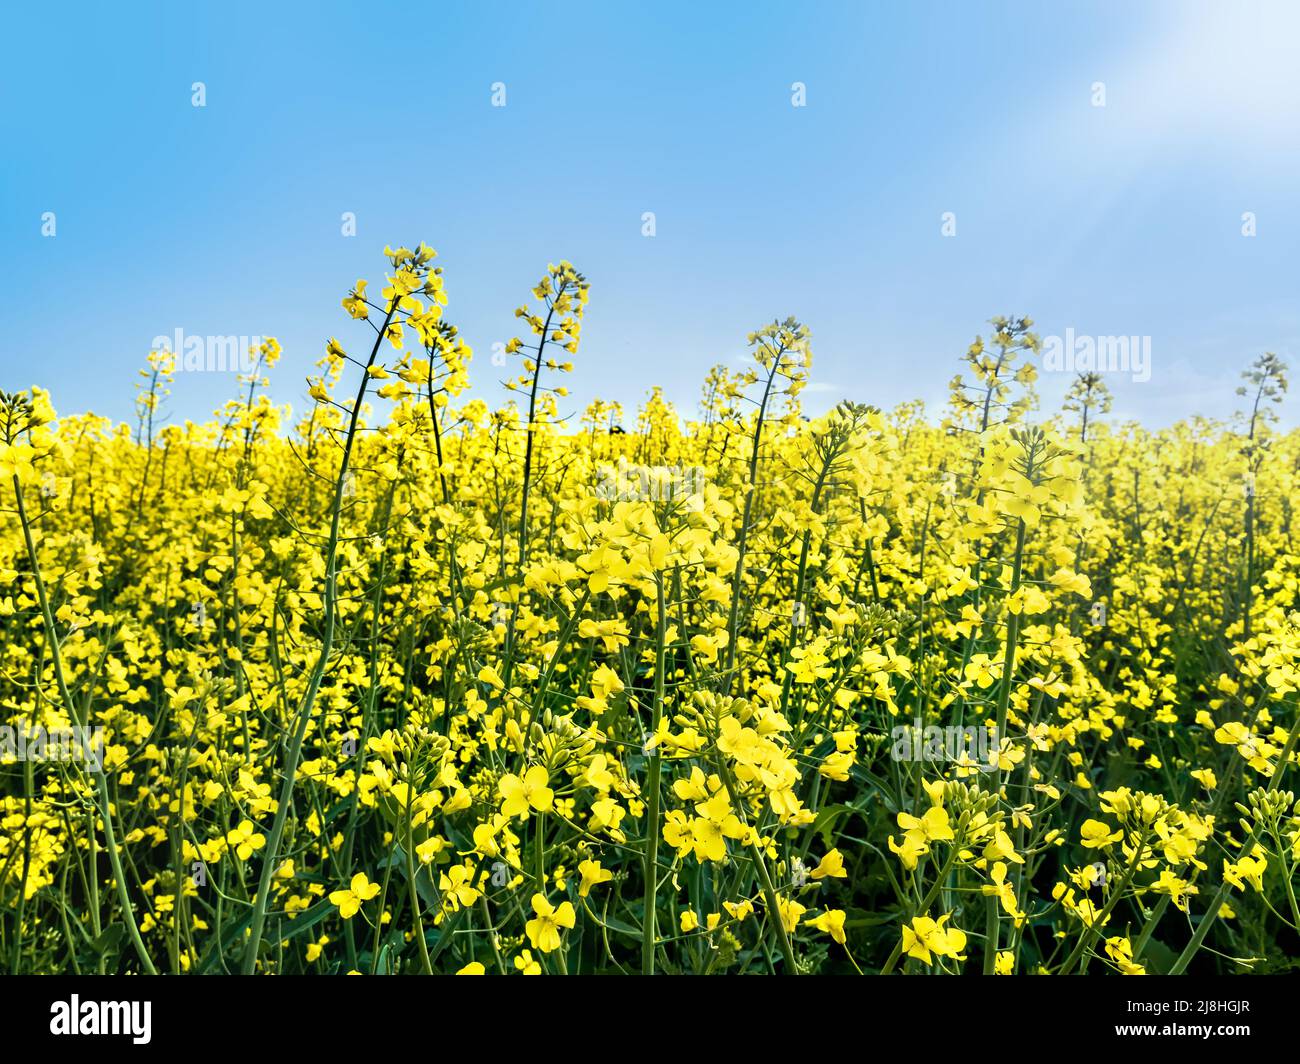 Hermoso campo cultivado con flores amarillas de colza en flor en un día soleado Foto de stock